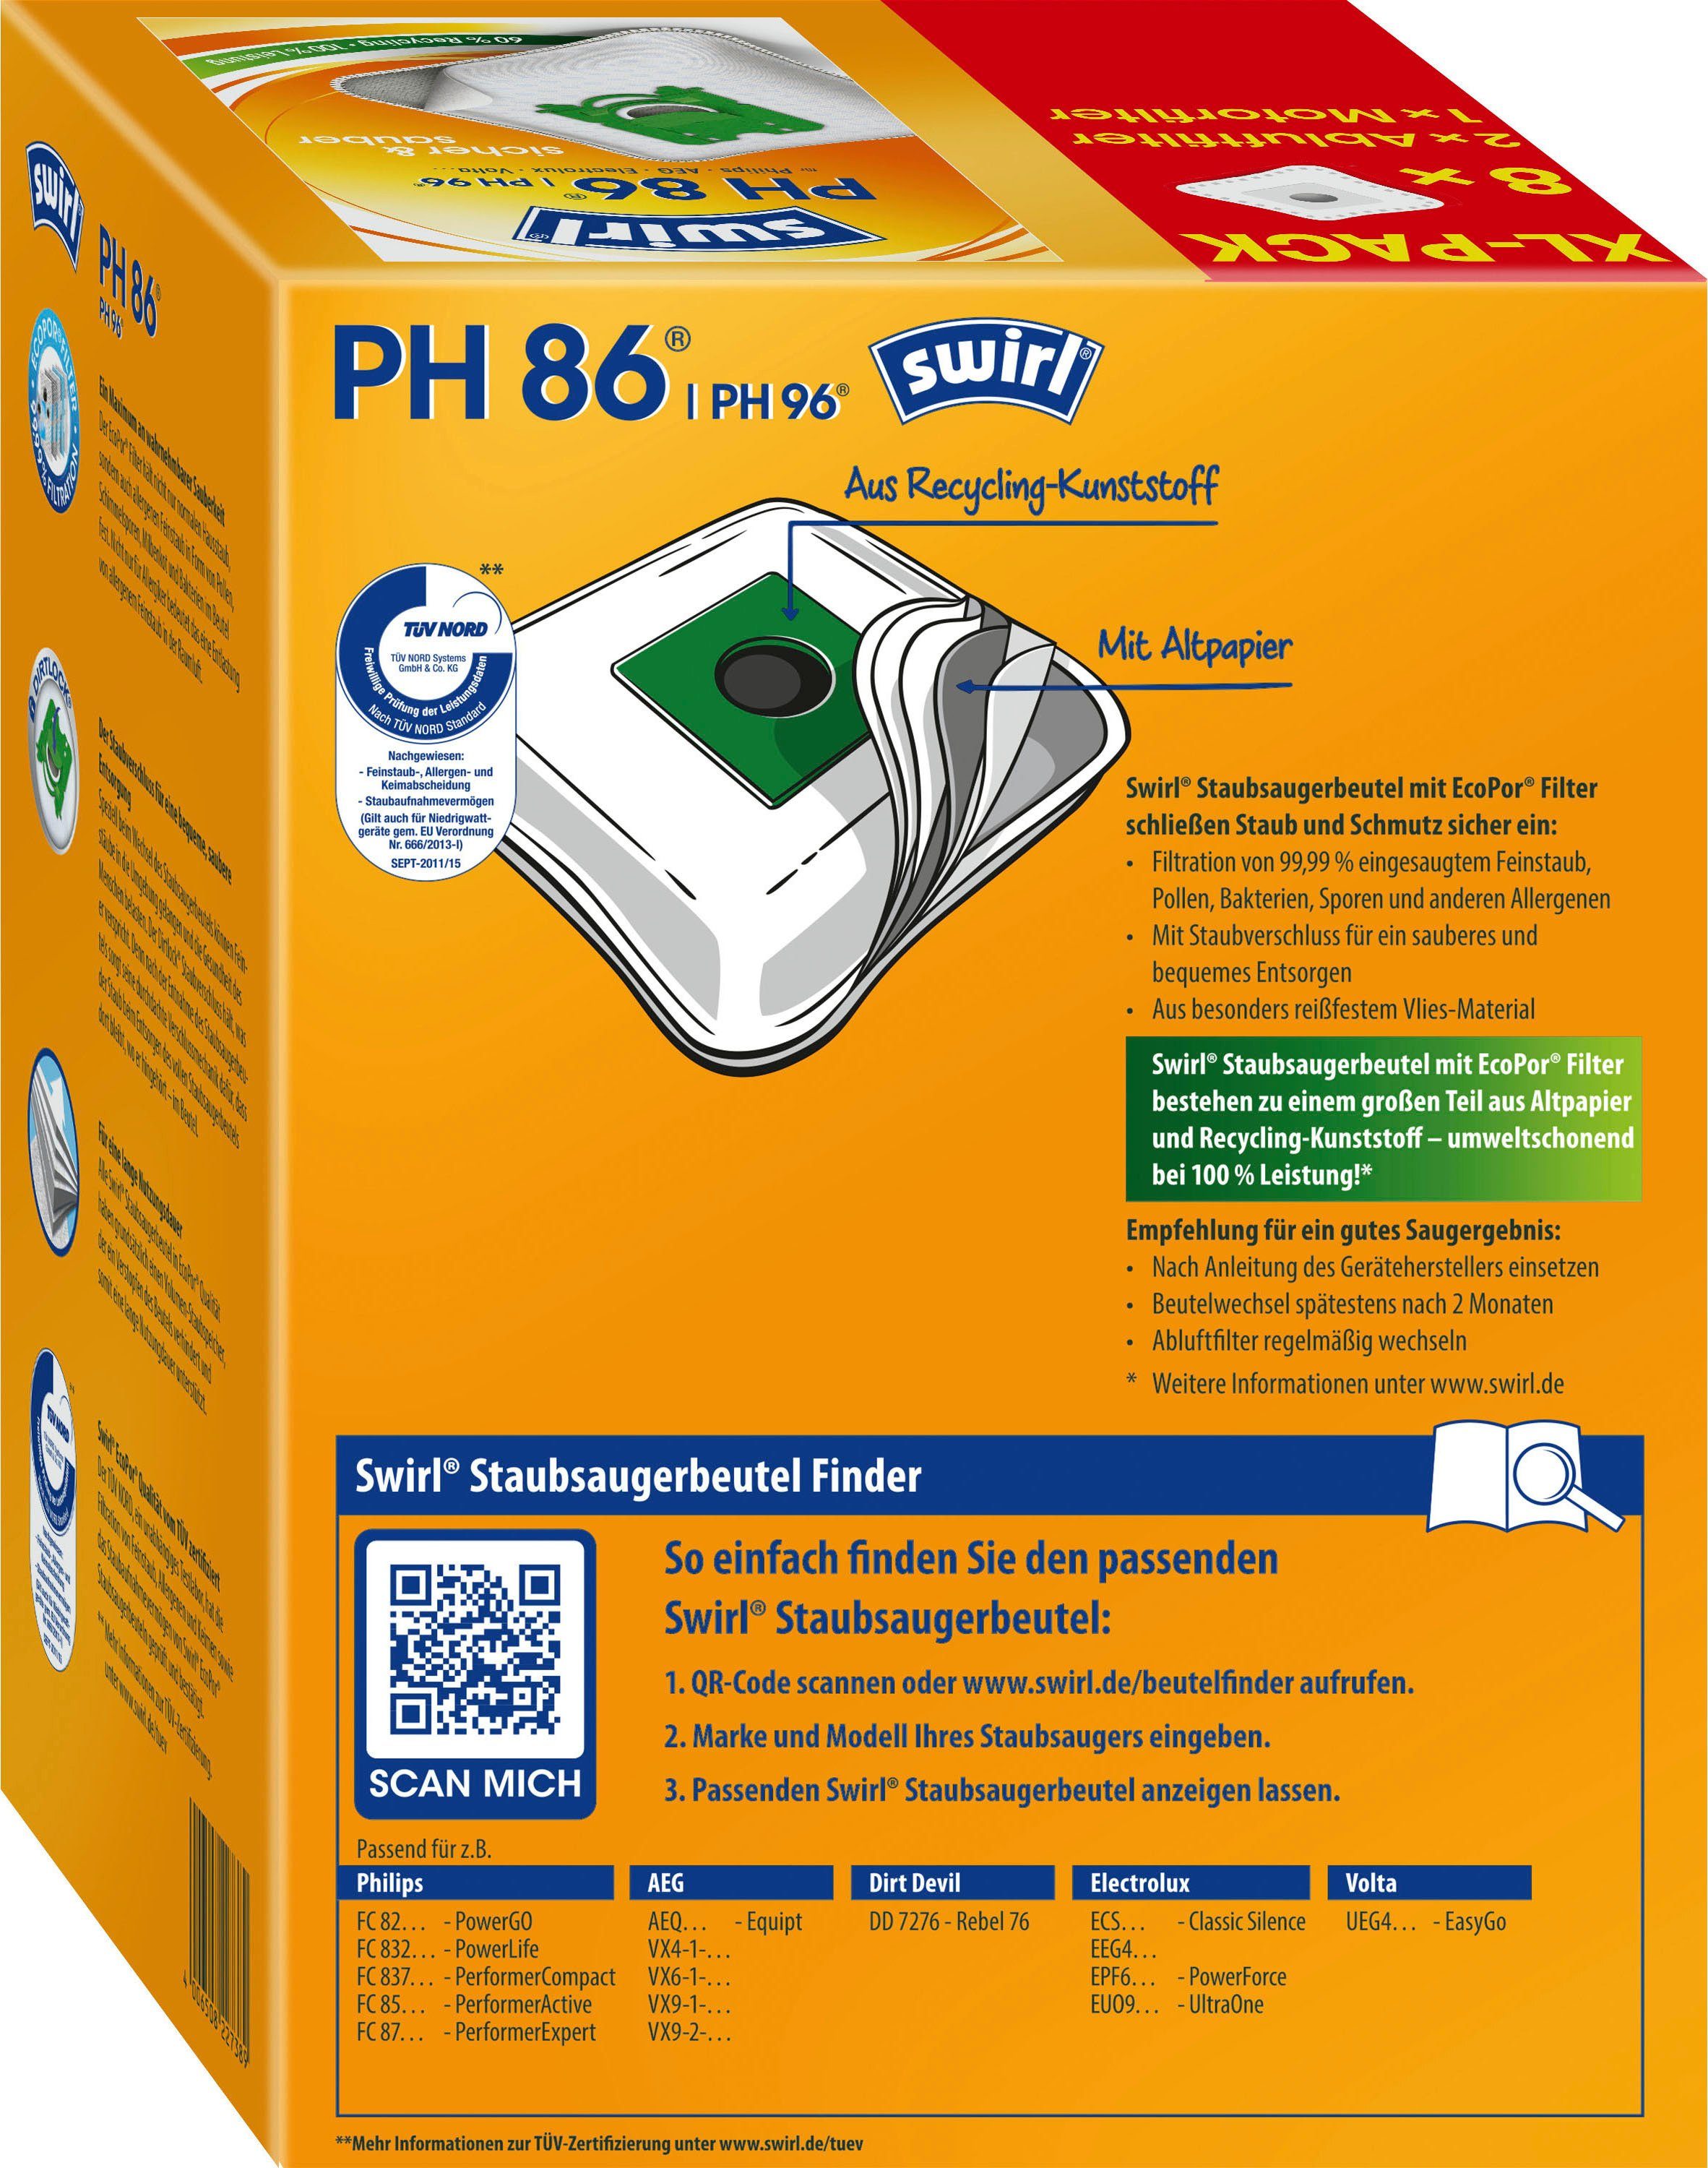 PH 86/96 XL St., für Philips, 11 passend Staubsaugerbeutel Swirl® für Swirl Vorteilspack, Philips AEG, EcoPor®